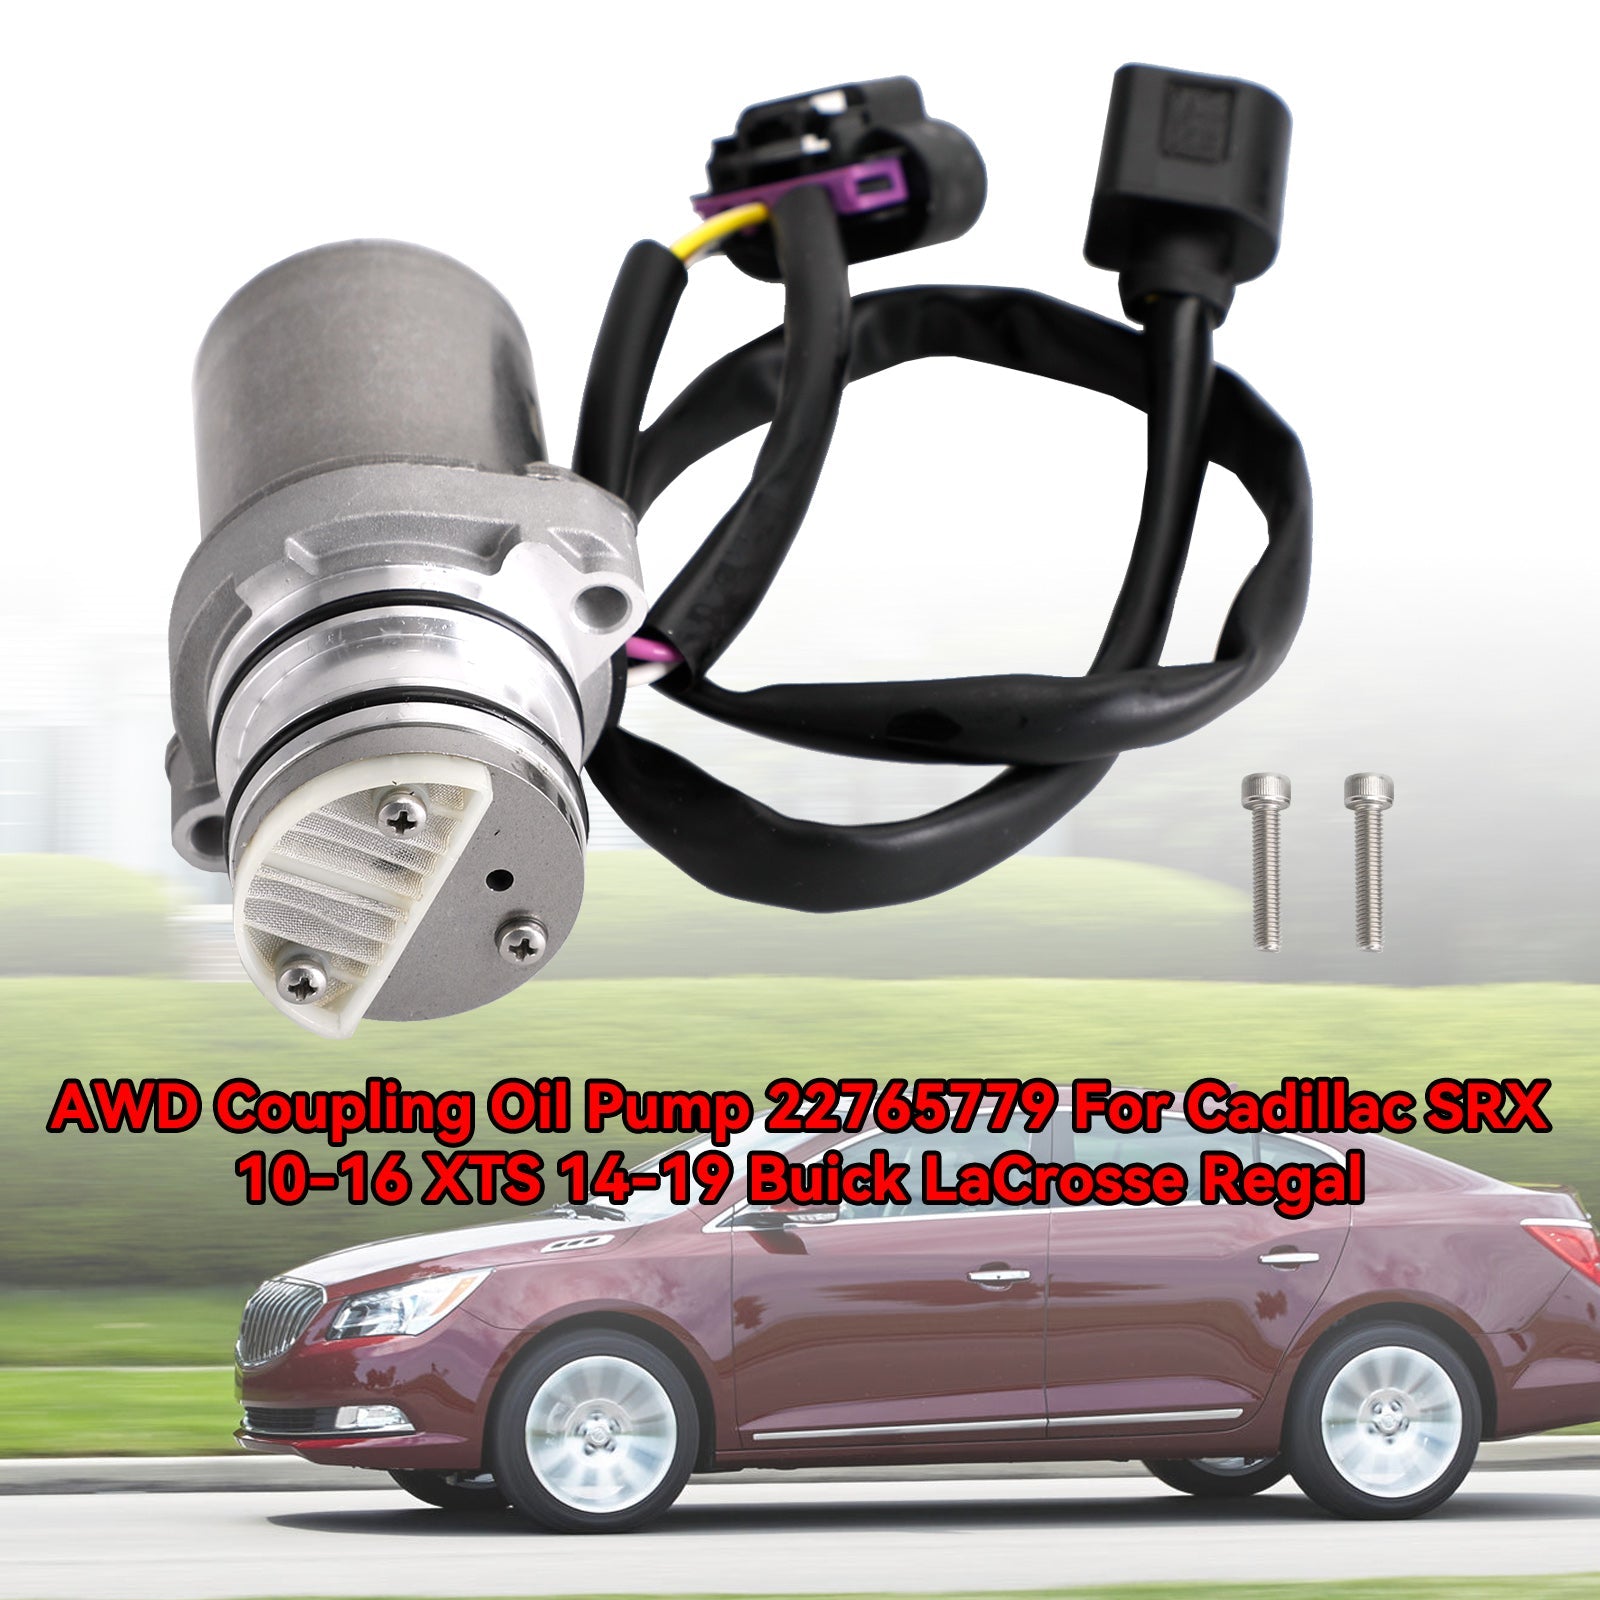 Buick Regal 2014-2017 L4 2.0L AWD Pompa olio Accoppiamento 22765779 404029 13285796 699000